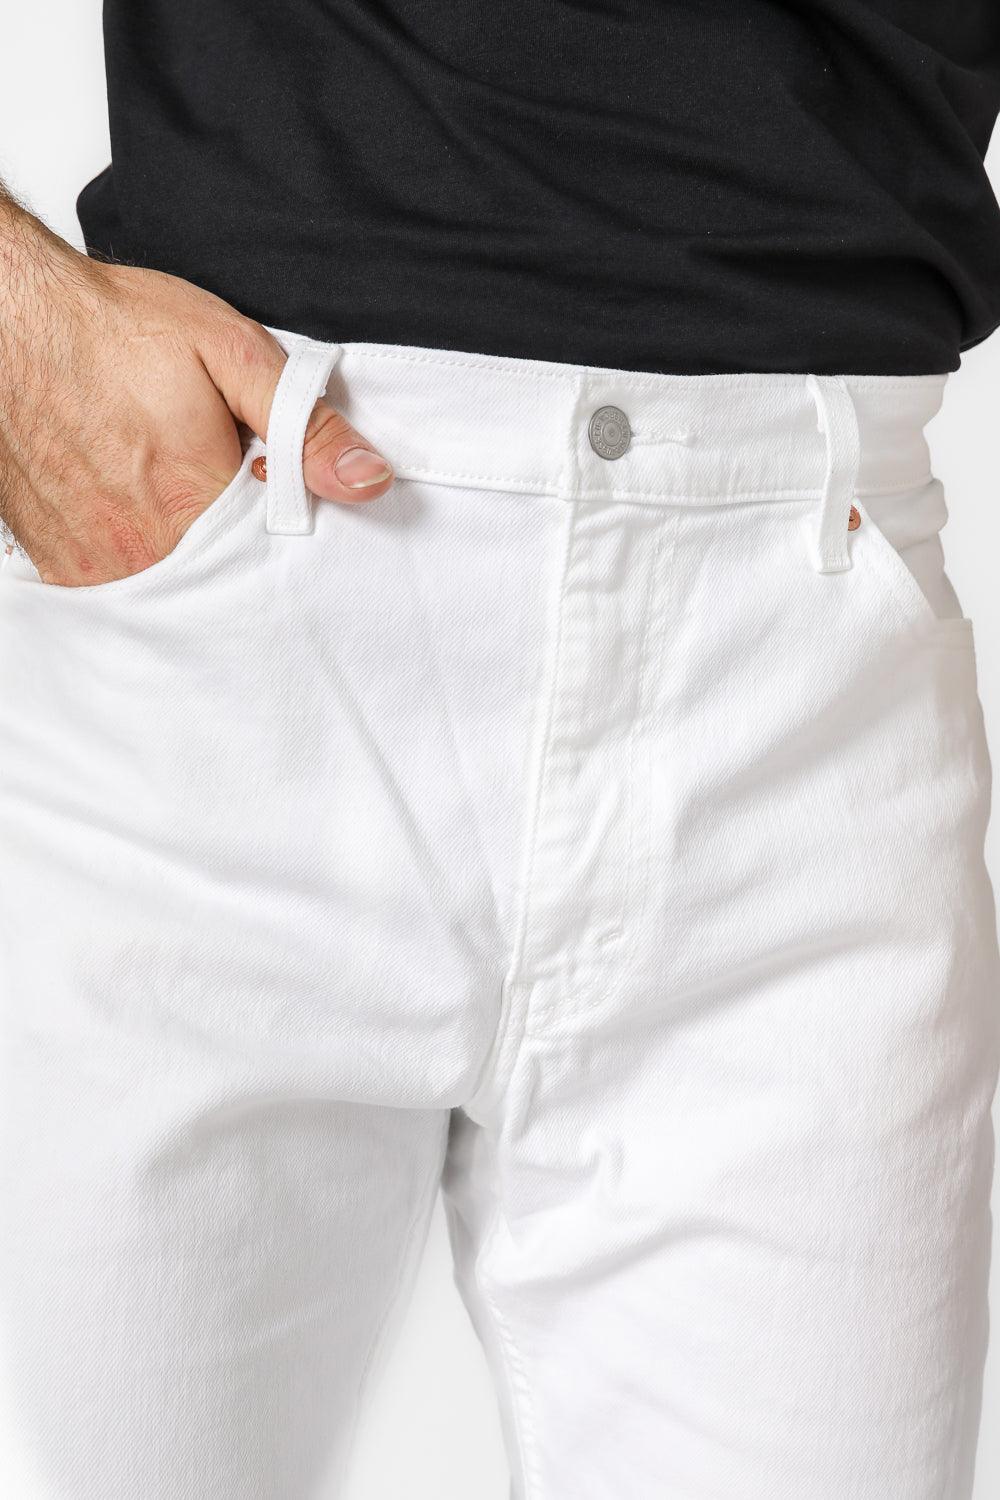 LEVI'S - ג'ינס NEUTRAL 511 SLIM בצבע לבן - MASHBIR//365